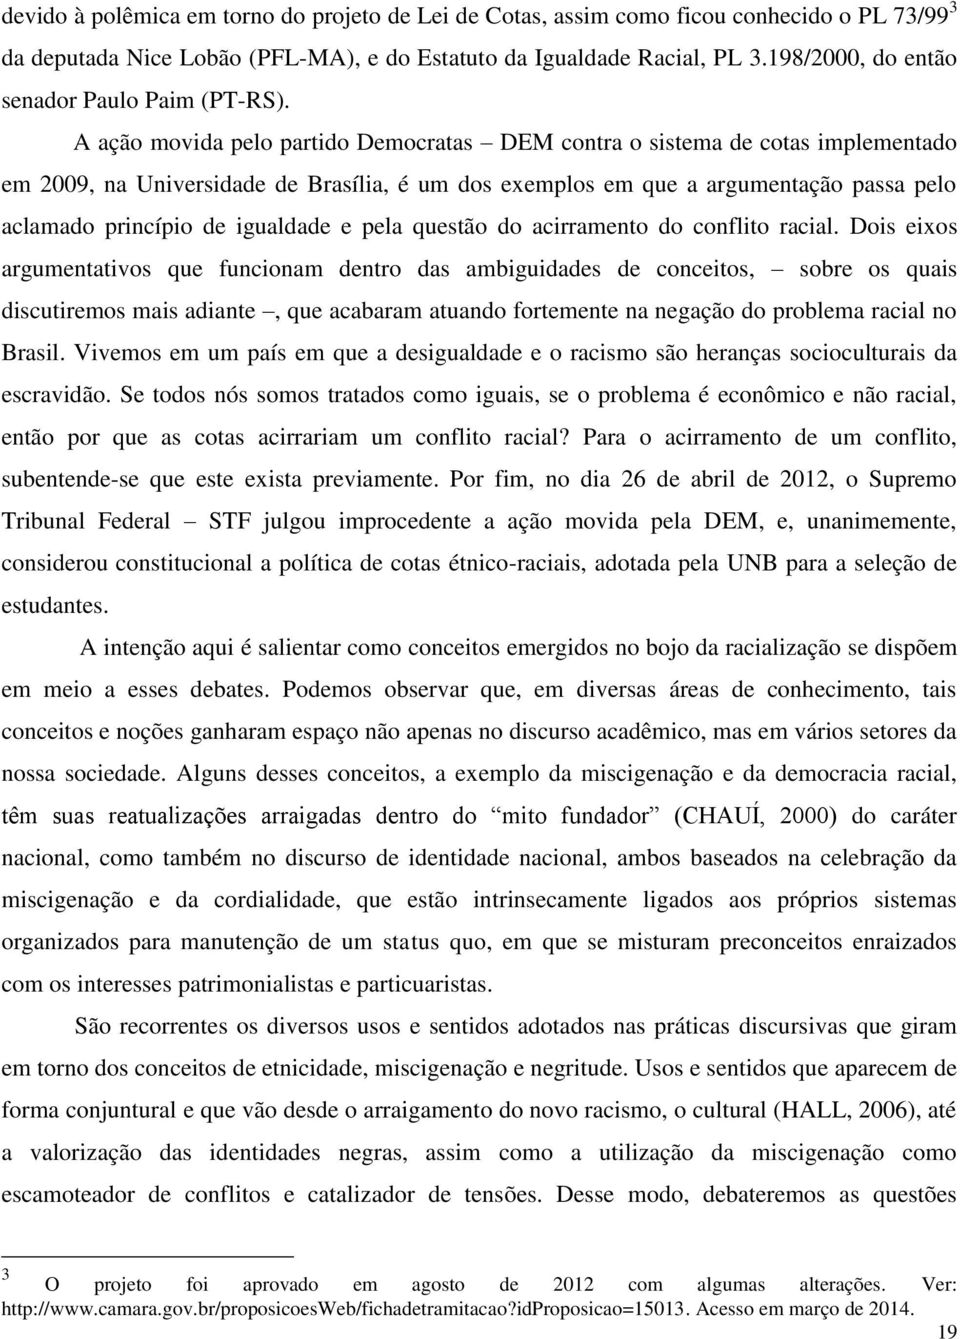 A ação movida pelo partido Democratas DEM contra o sistema de cotas implementado em 2009, na Universidade de Brasília, é um dos exemplos em que a argumentação passa pelo aclamado princípio de